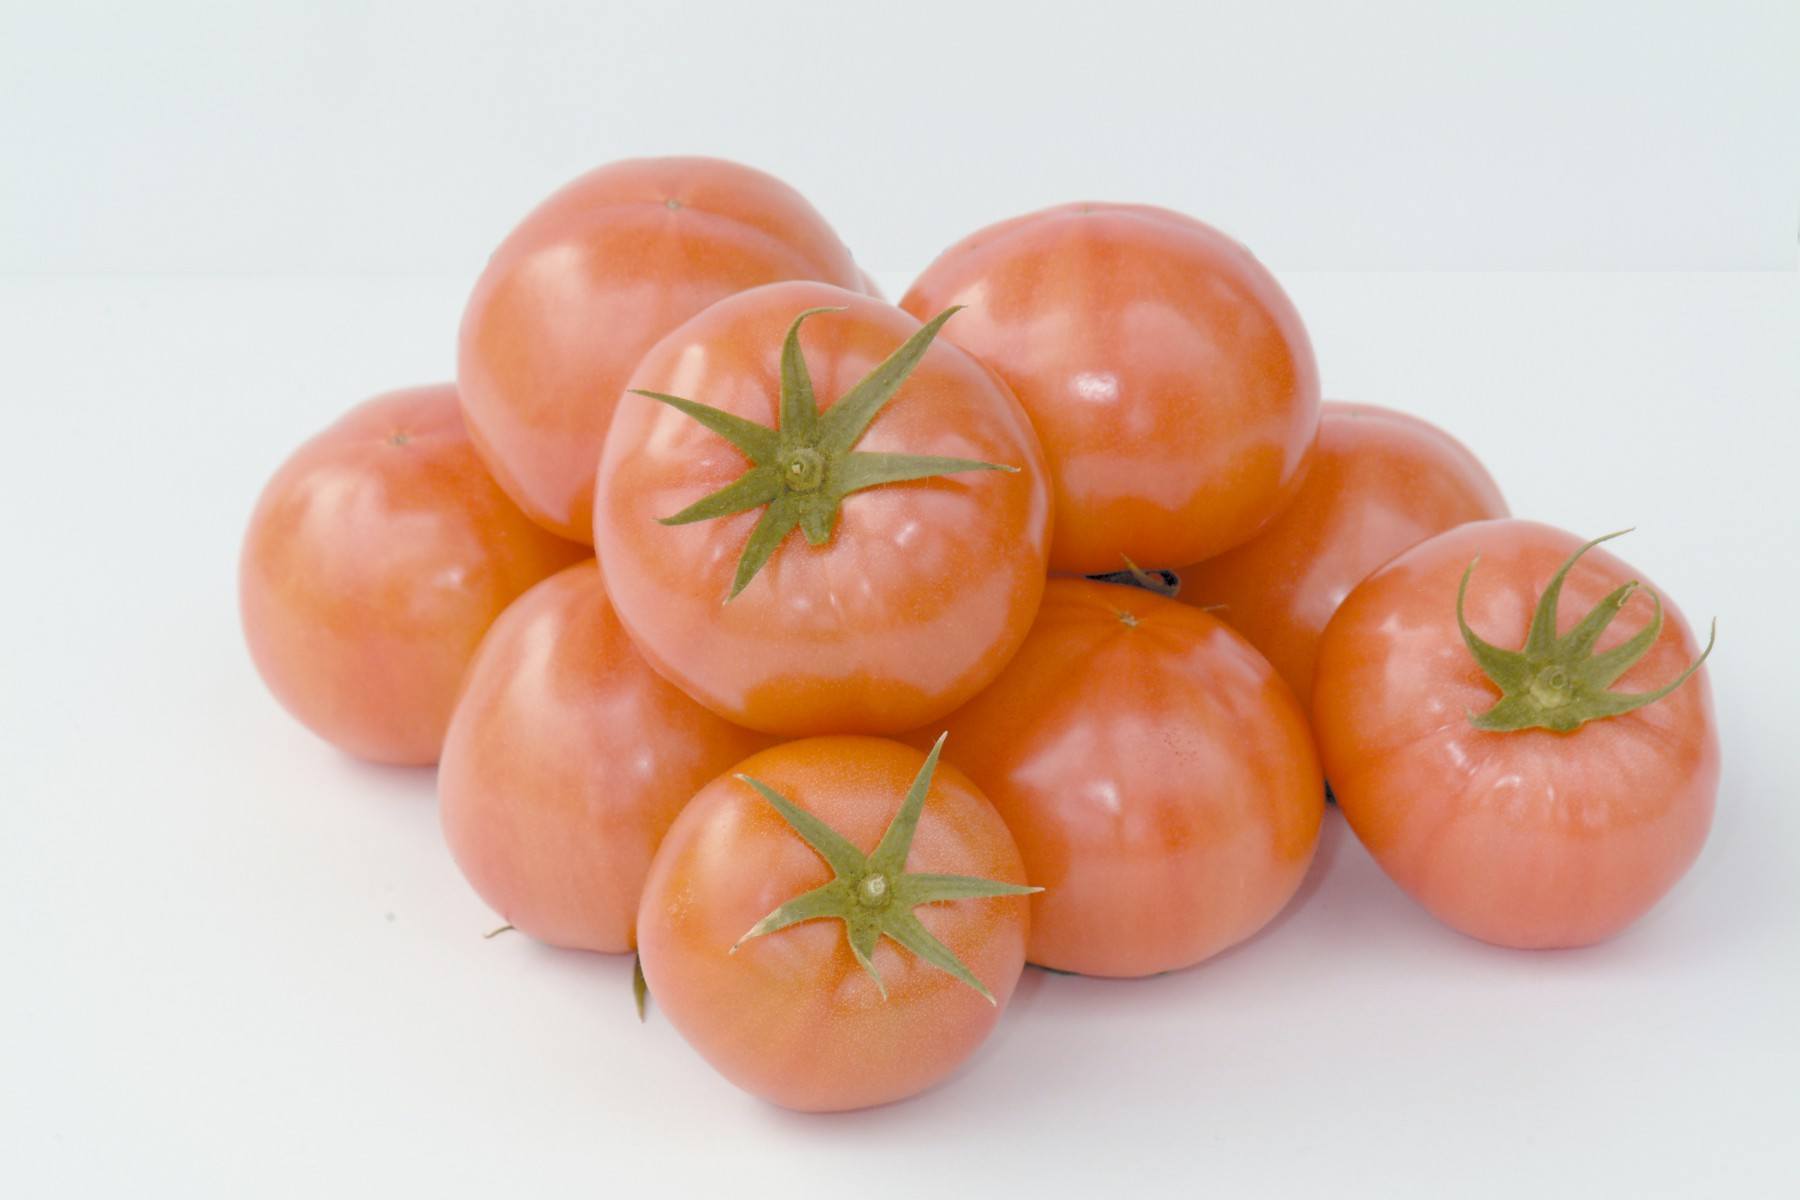 れき耕栽培のトマト(撮影年不明)の画像